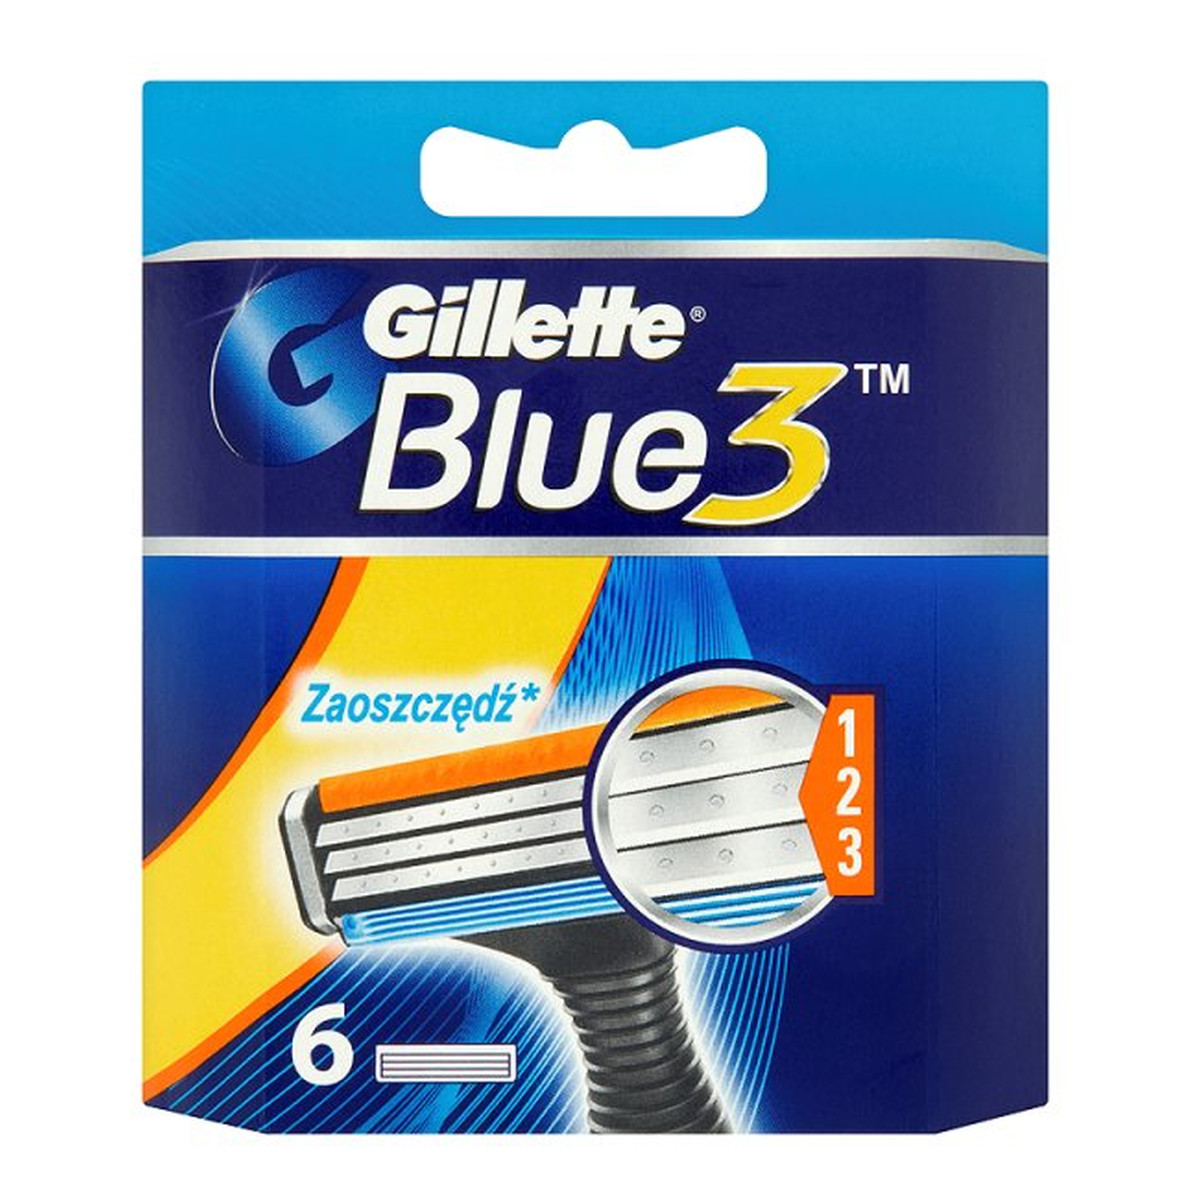 Gillette Blue 3 Wkład Do Maszynki Wymienne Ostrza 6szt.